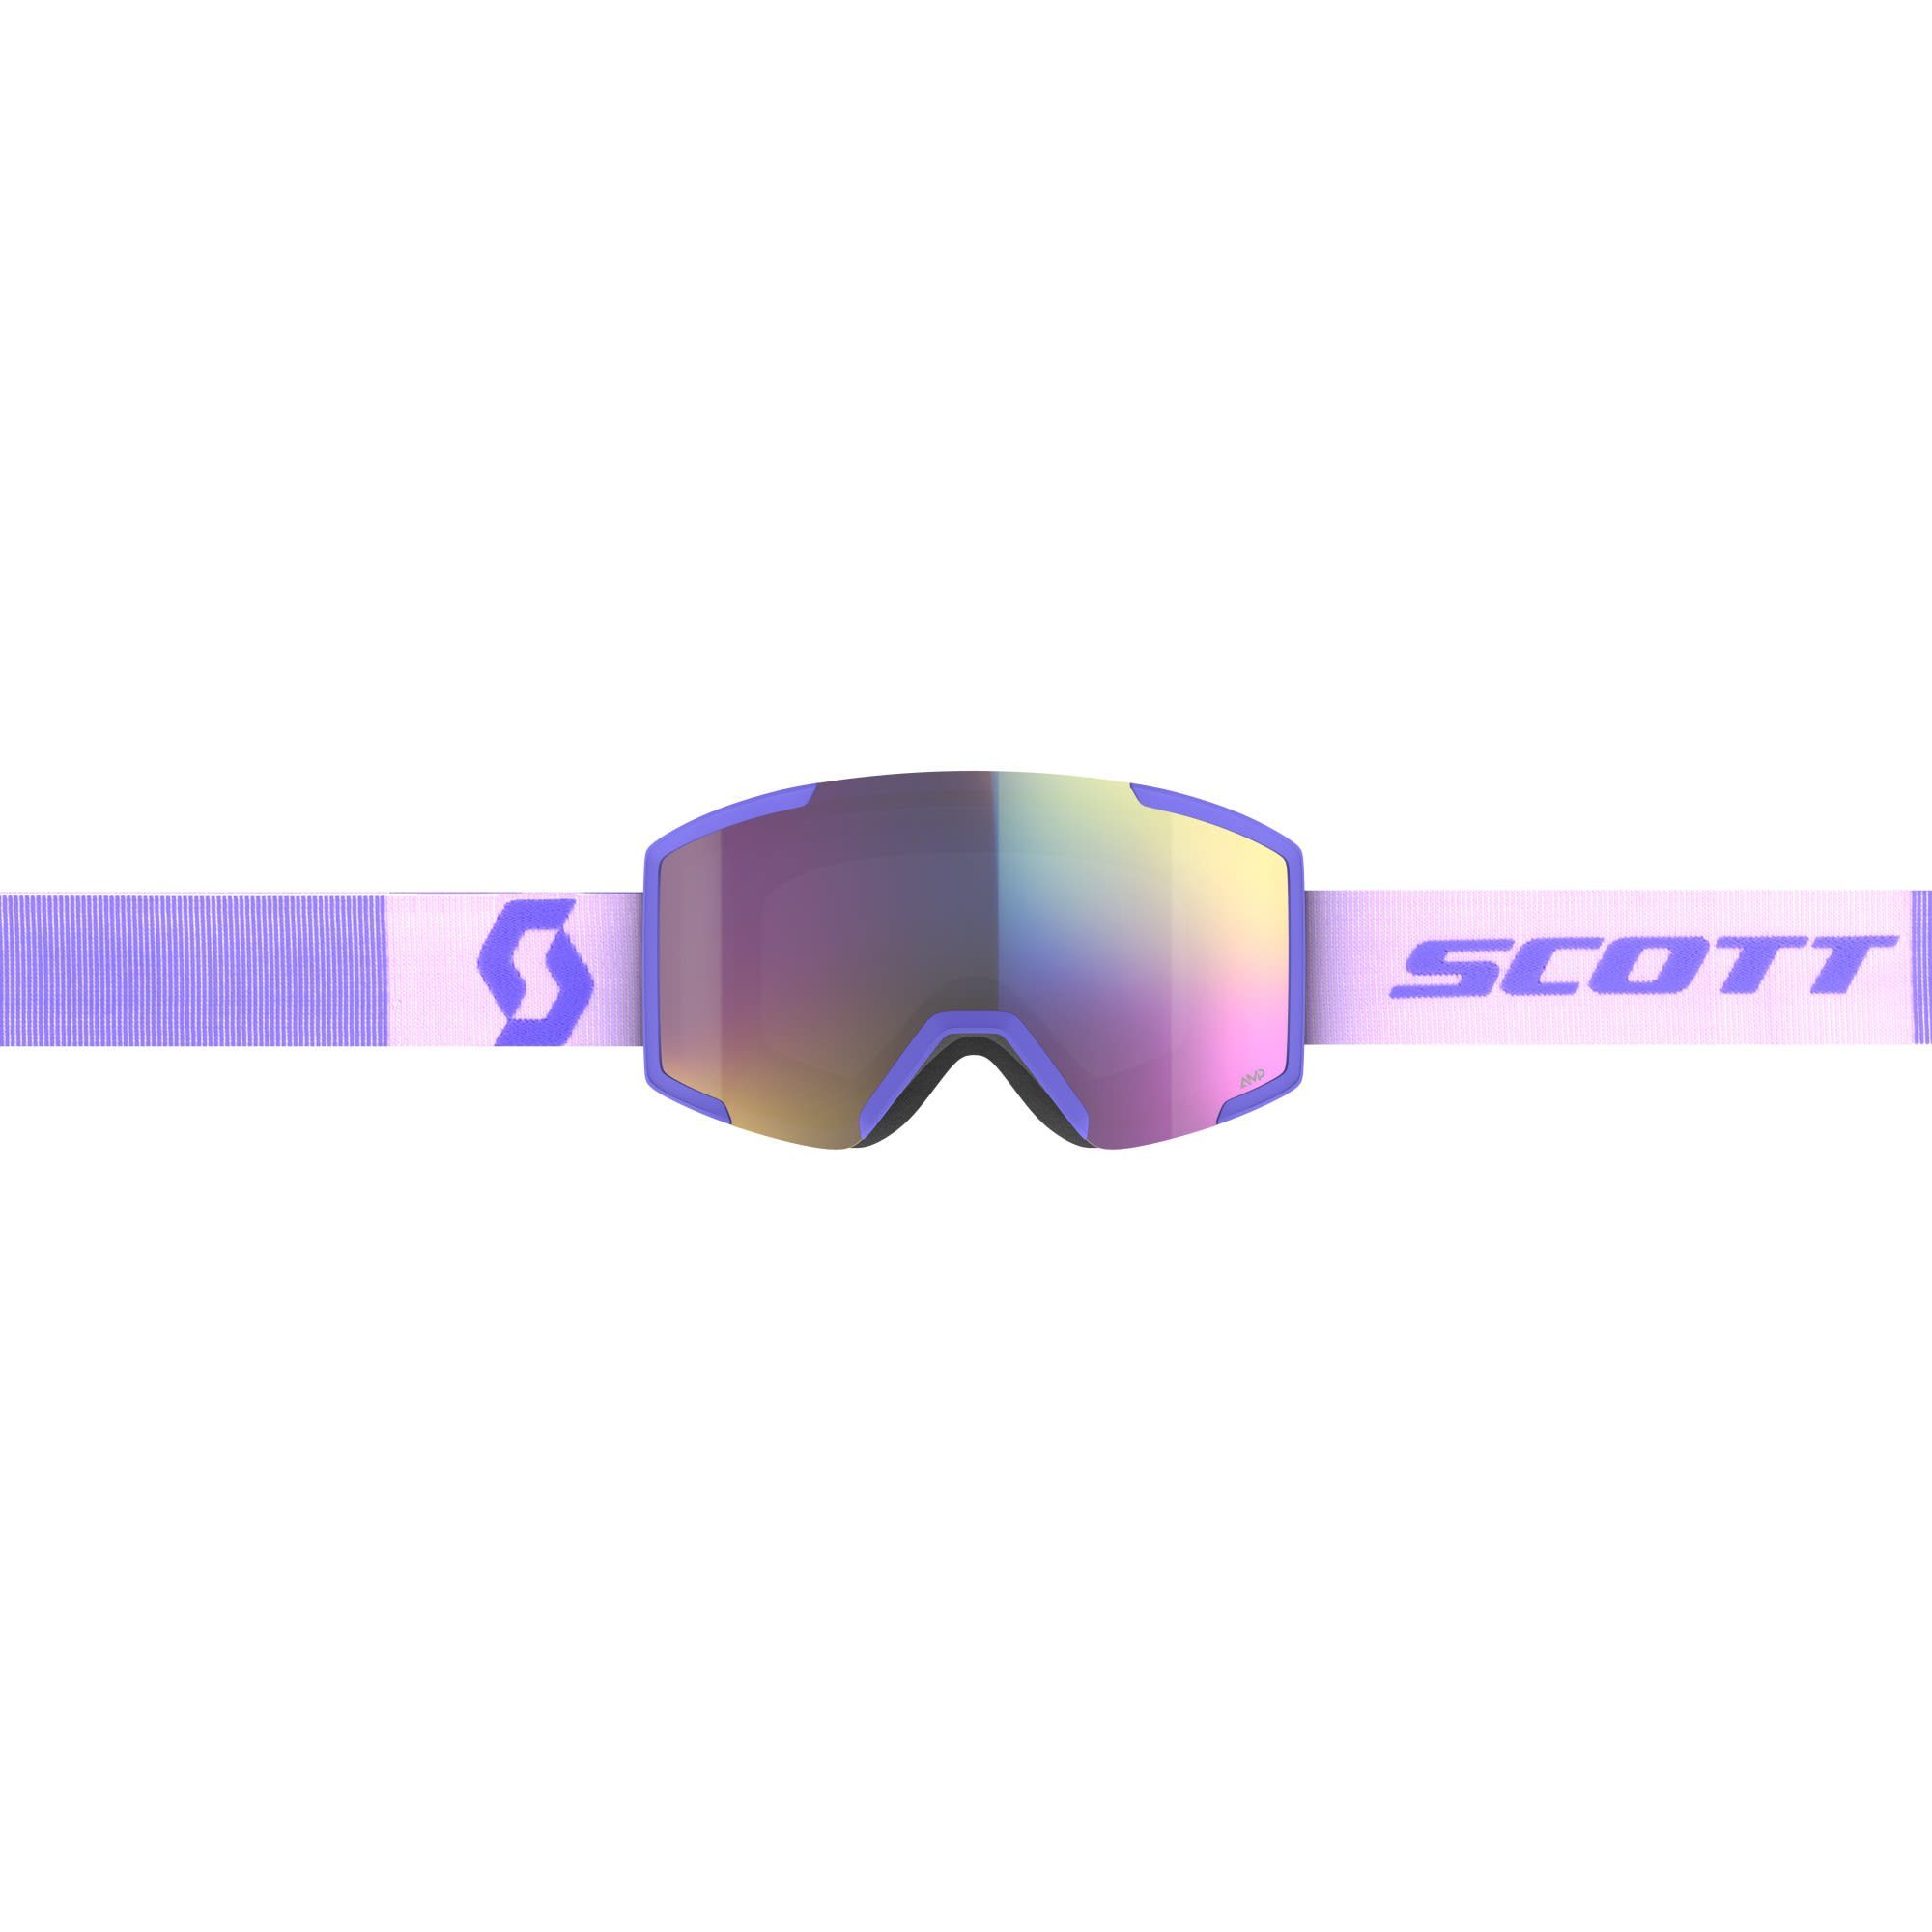 Accessoires - Purple Teal Lavender Goggle Skibrille Shield Scott Enhancer Scott Chrome